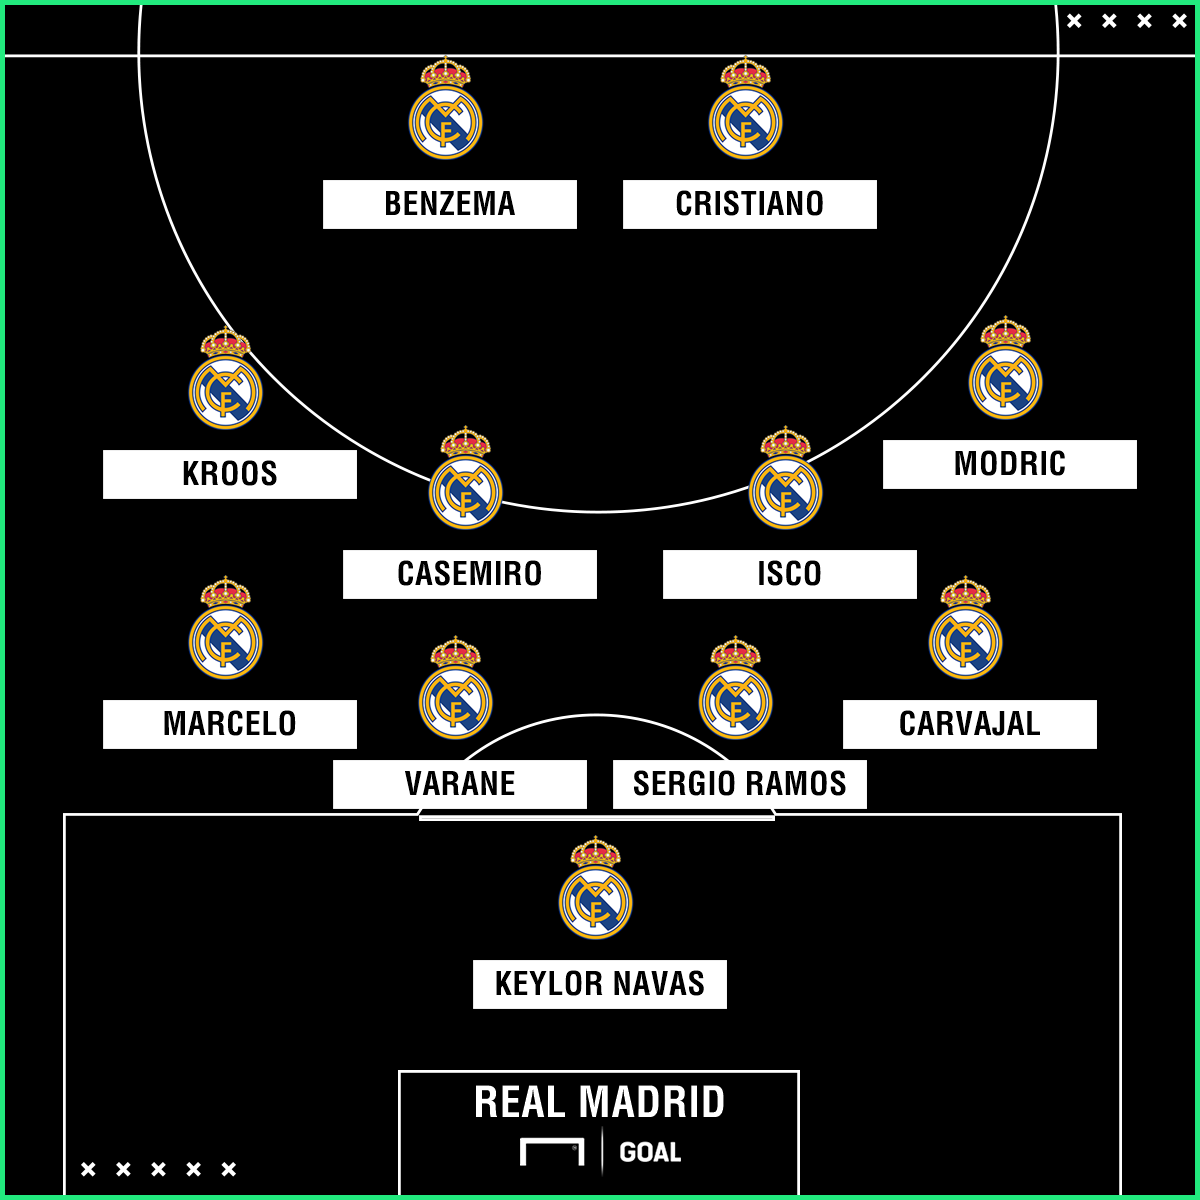 Real Madrid mantém a formação dos sonhos com Zidane